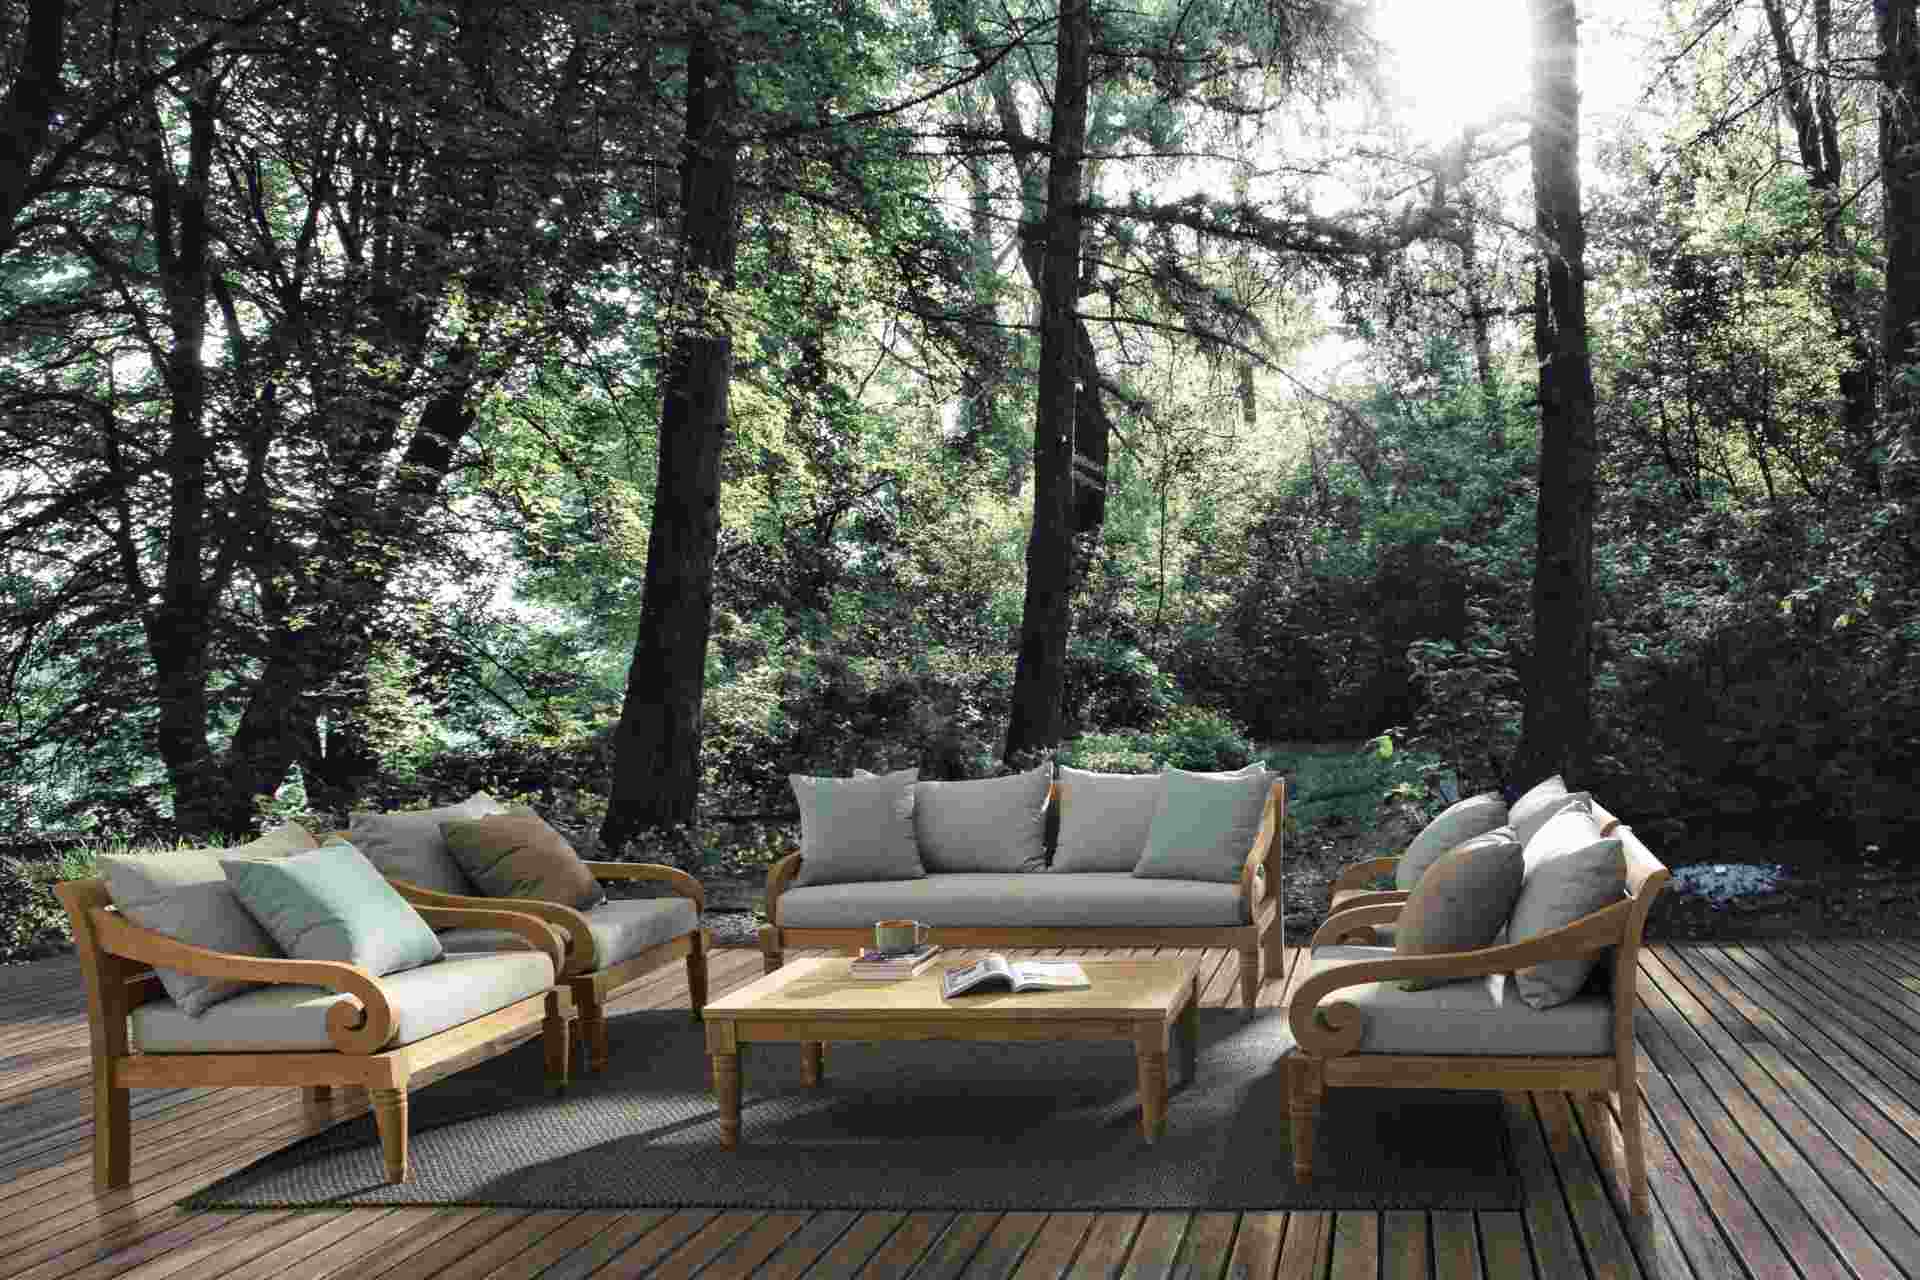 Das Gartensofa Karuba überzeugt mit seinem klassischen Design. Gefertigt wurde es aus Teakholz, welche einen natürlichen Farbton besitzt. Die Kissen und Auflagen haben eine hellgraue Farbe. Das Sofa verfügt über eine Sitzhöhe von 42 cm und ist für den Out